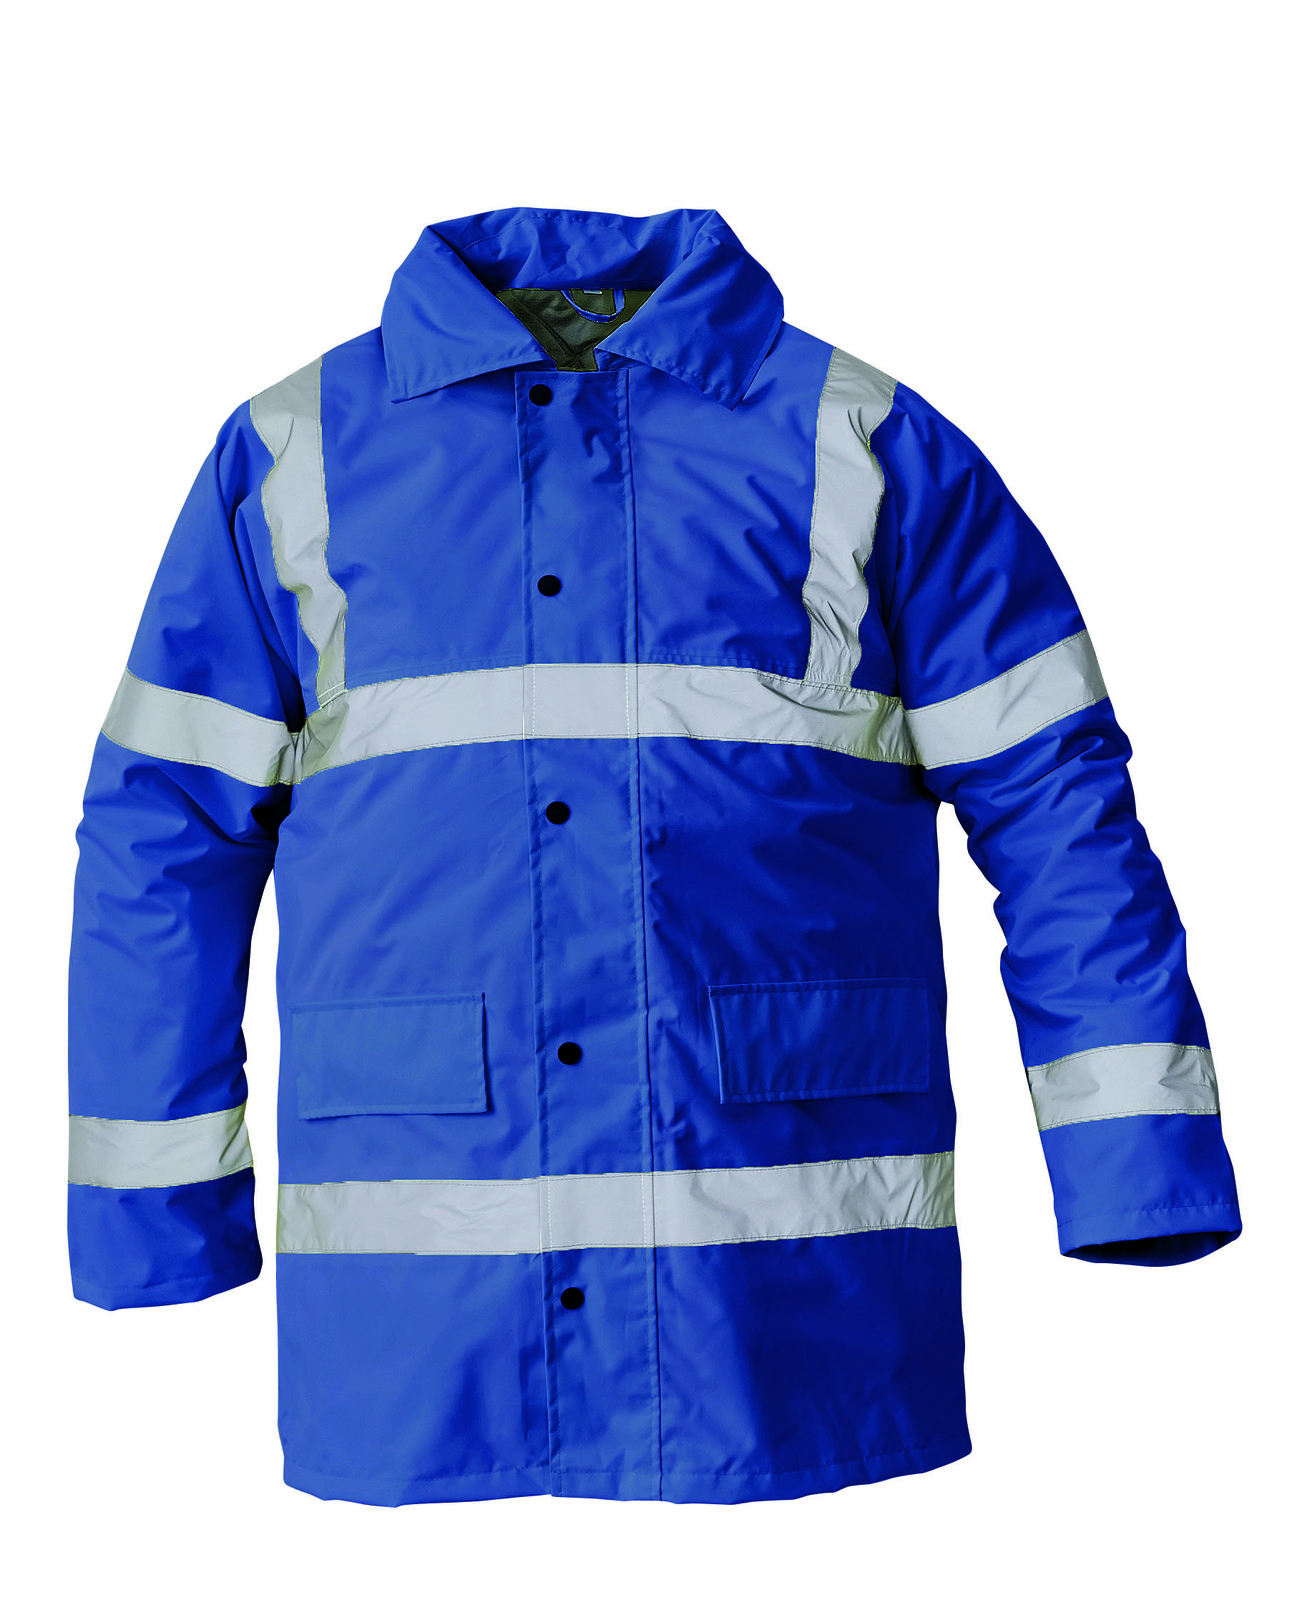 Ľahká zateplená reflexná bunda Sefton - veľkosť: L, farba: royal blue